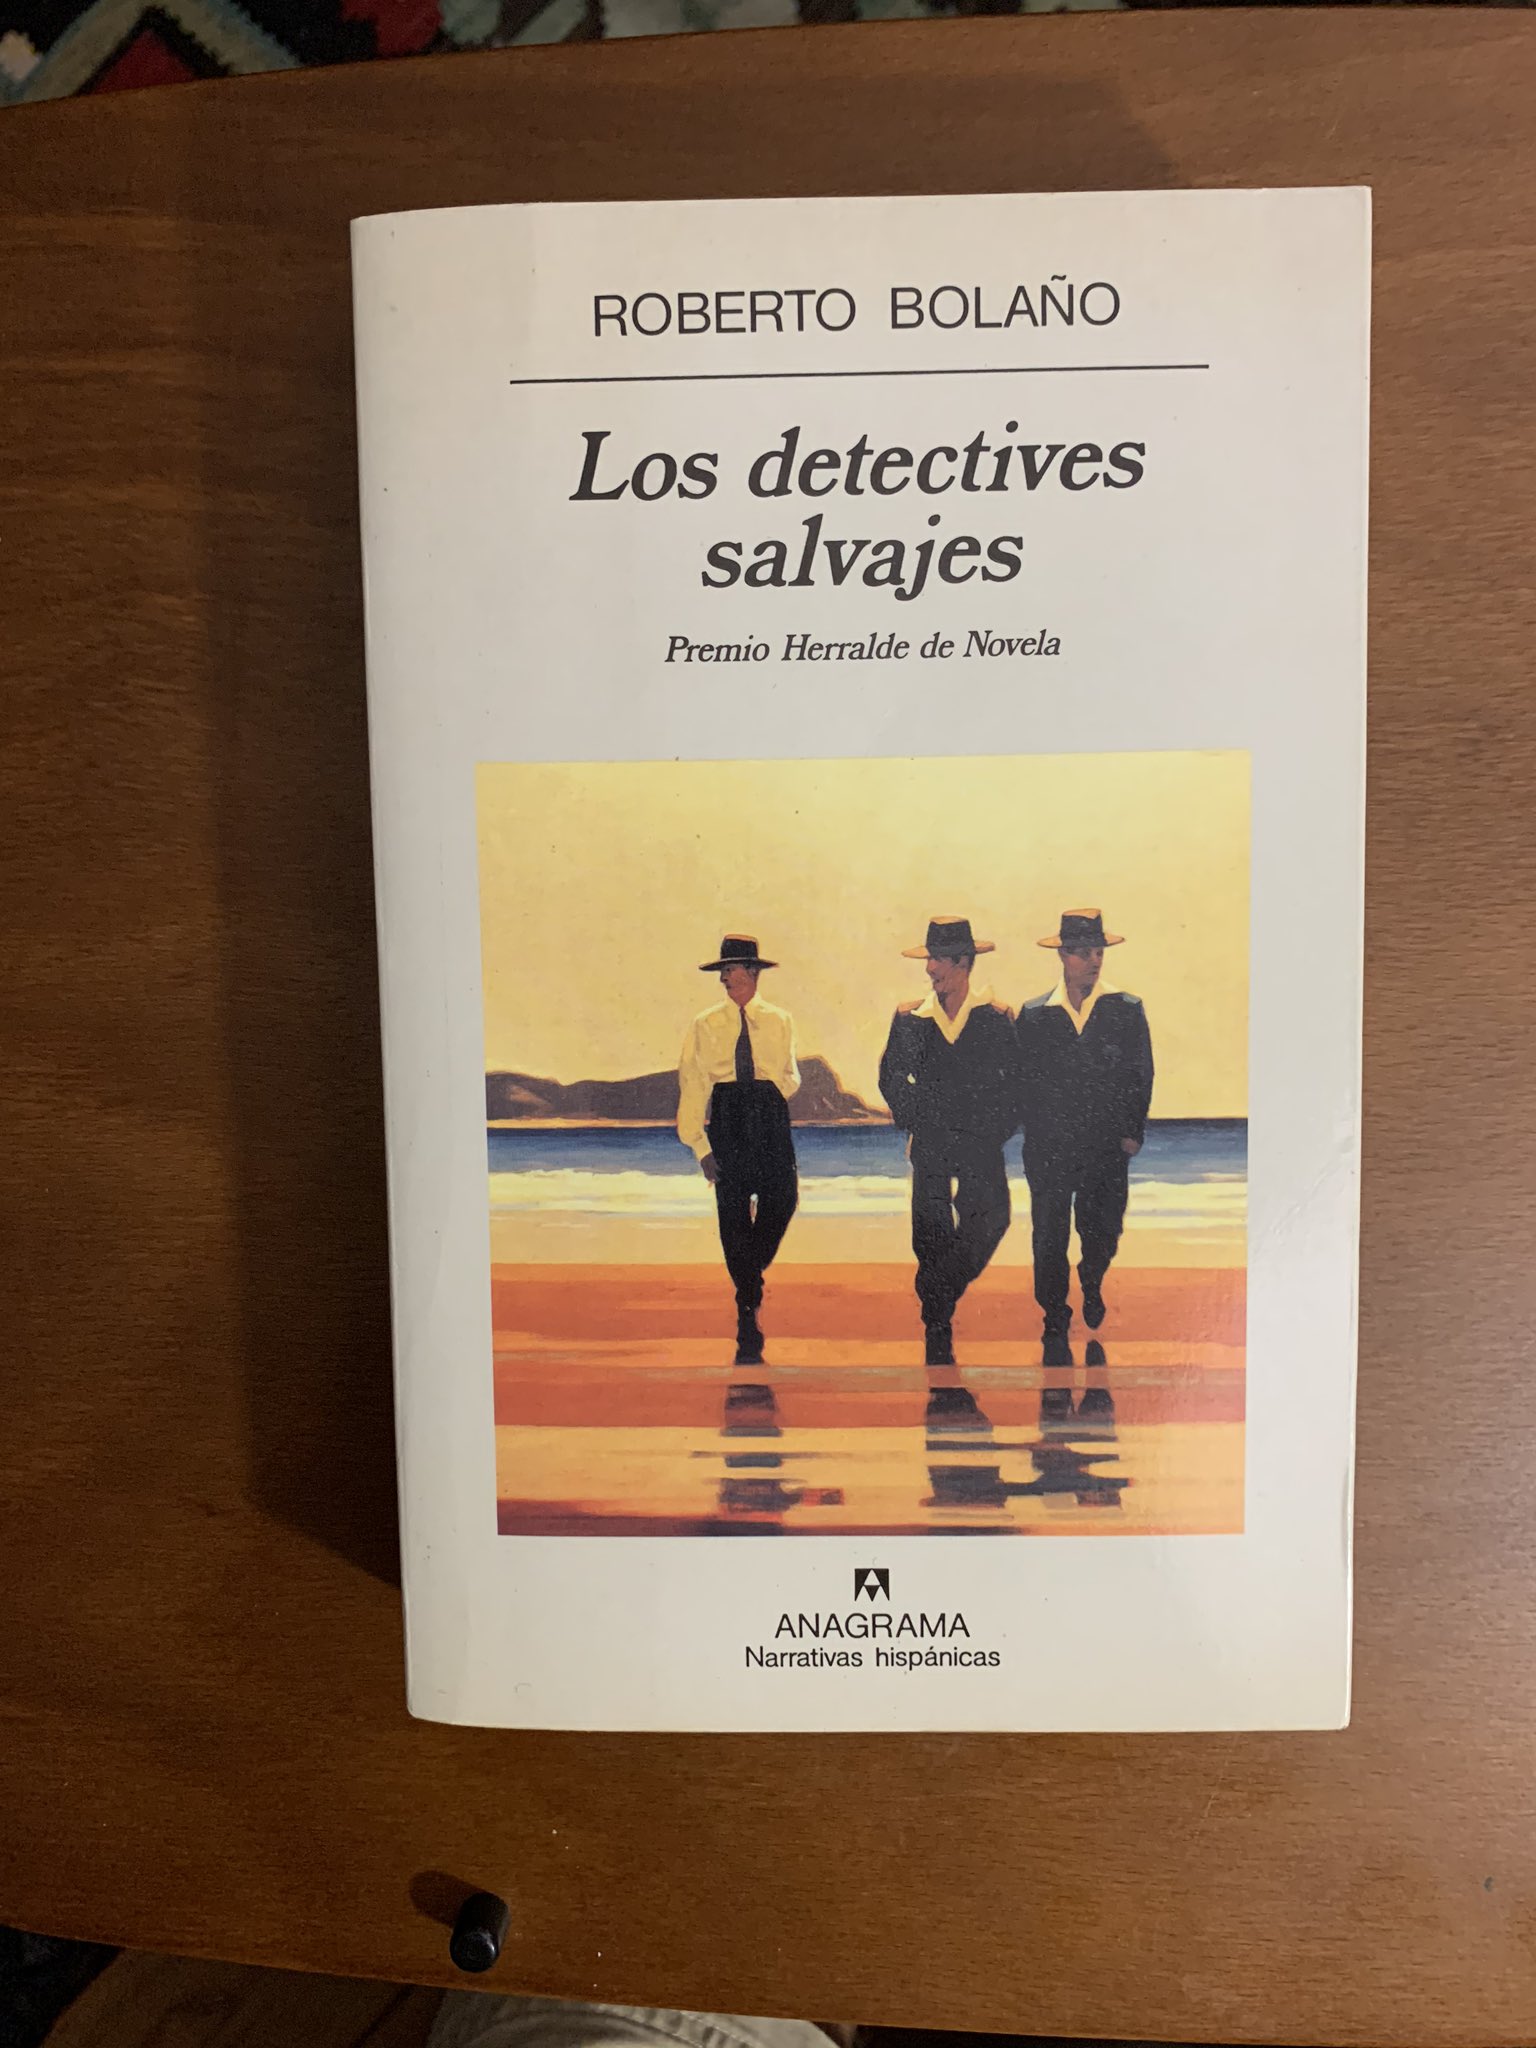 Gran universo compañerismo rodar تويتر \ Juan Infante على تويتر: "Los detectives salvajes de Roberto Bolaño(  Anagrama ) La he terminado de releer; no es una novela fácil, pero es  imprescindible en la literatura latinoamericana de